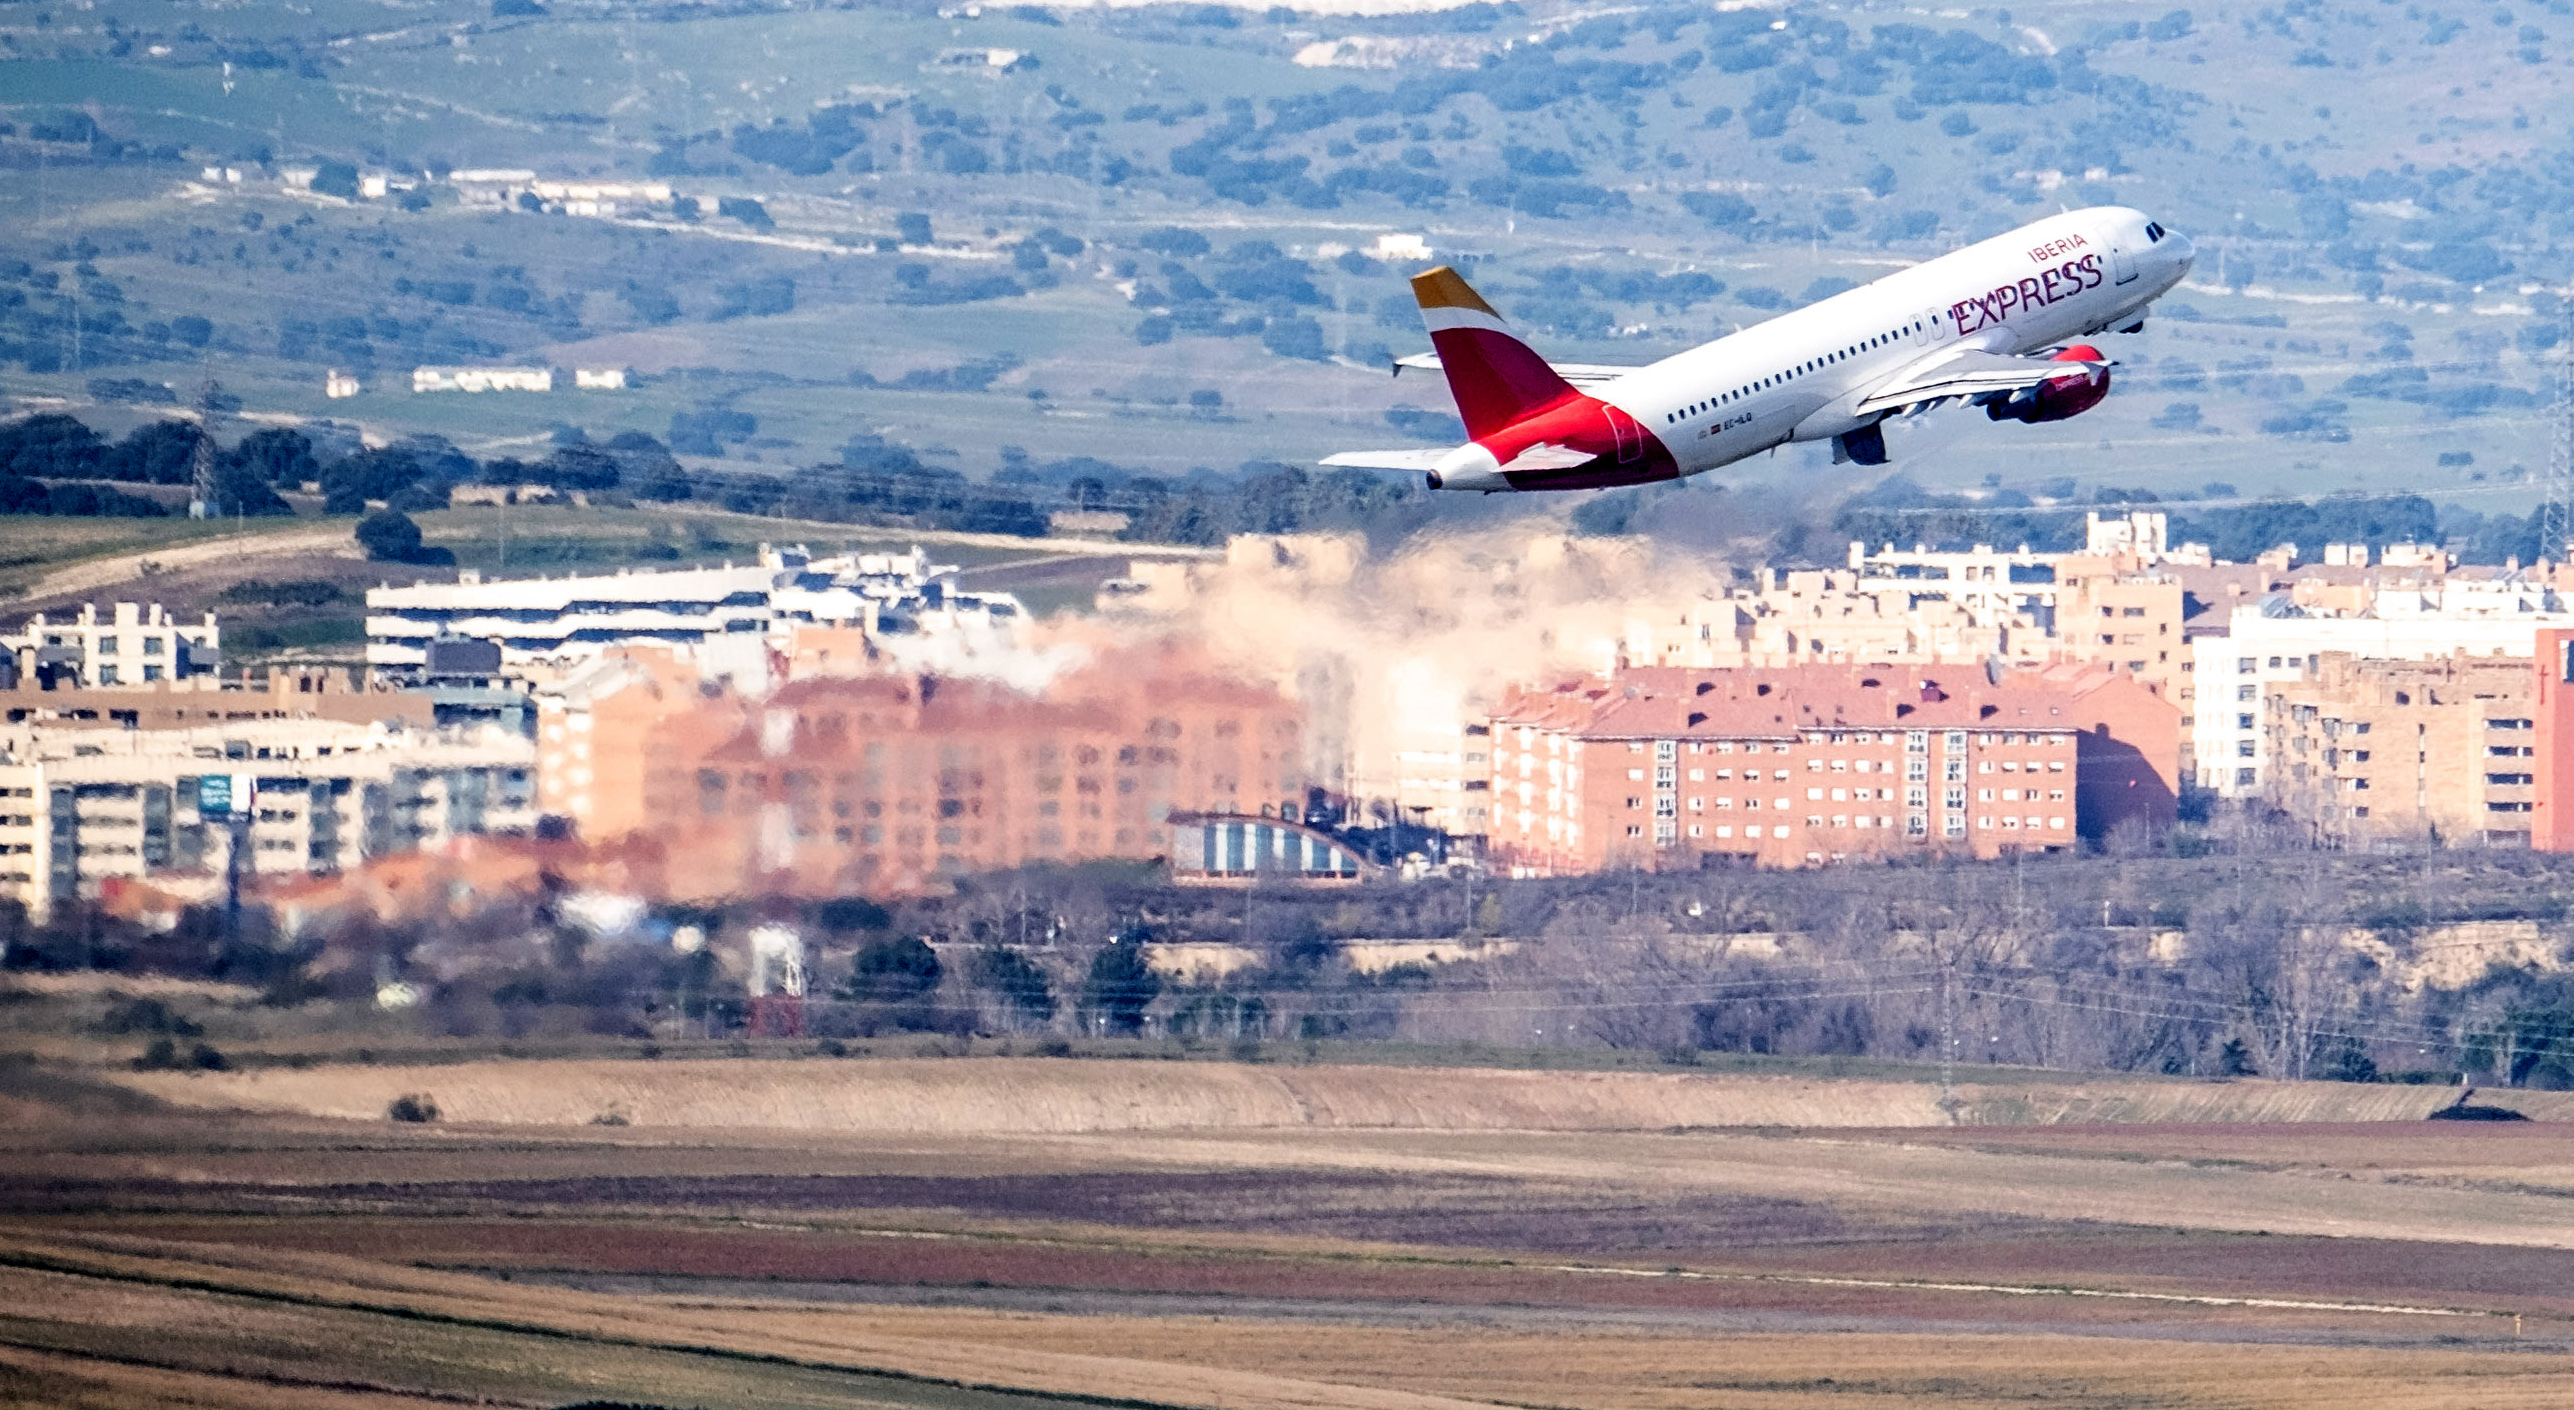 Vista panorámica del aeropuerto Adolfo Suárez de Madrid. Un avión de Iberia Express despegando.